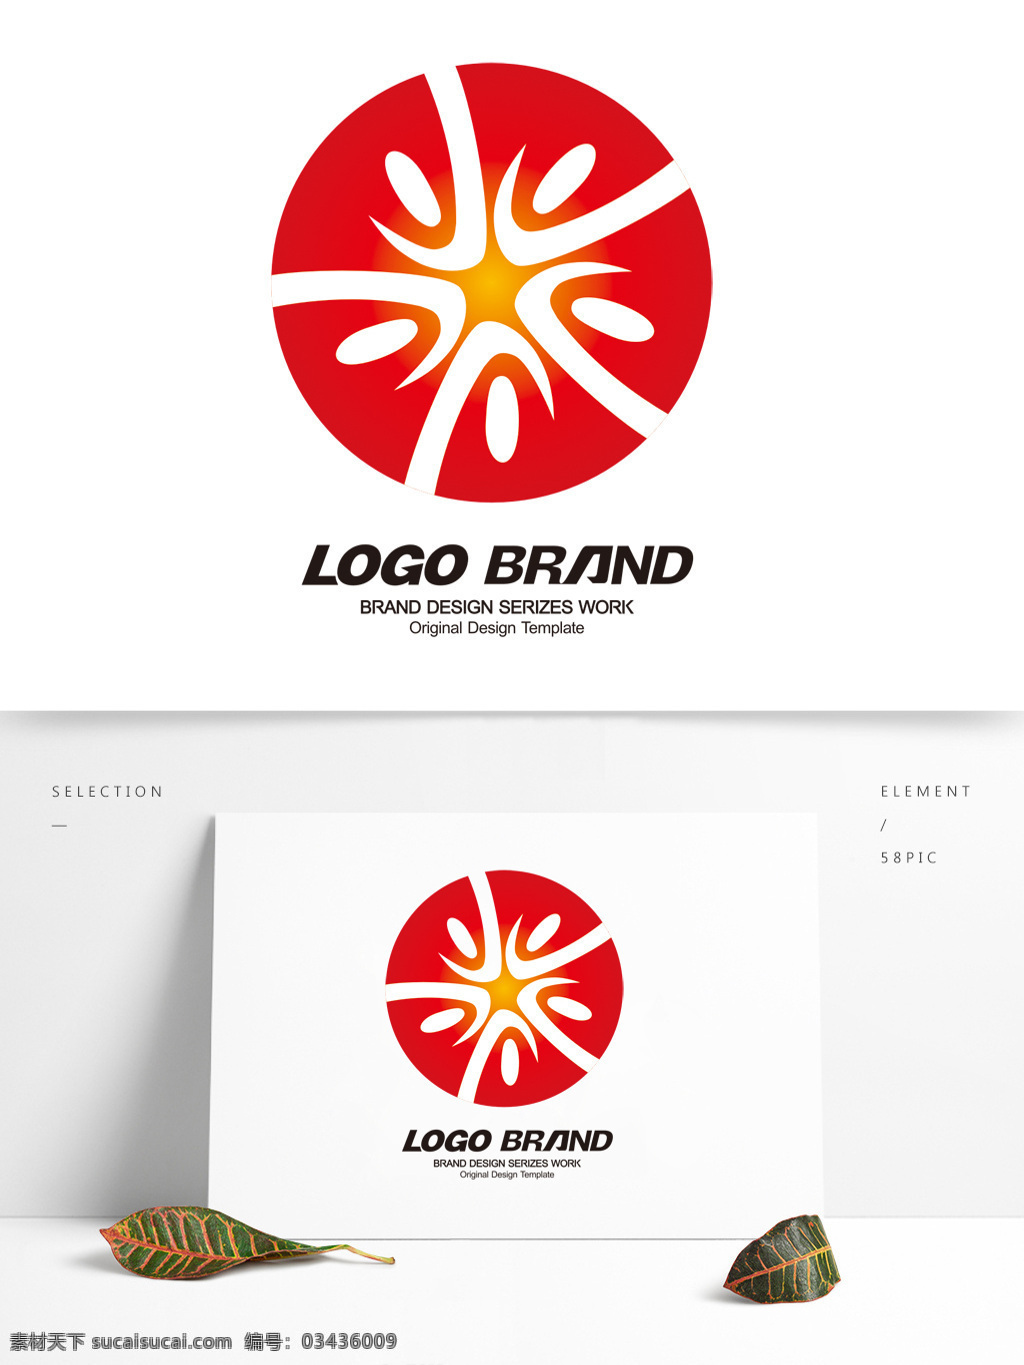 创意 矢量 红色 图 藤 logo 设计公司 标志 v 字母 标志设计 l 科技 公司 公司标志设计 企业 会徽标志设计 企业标志设计